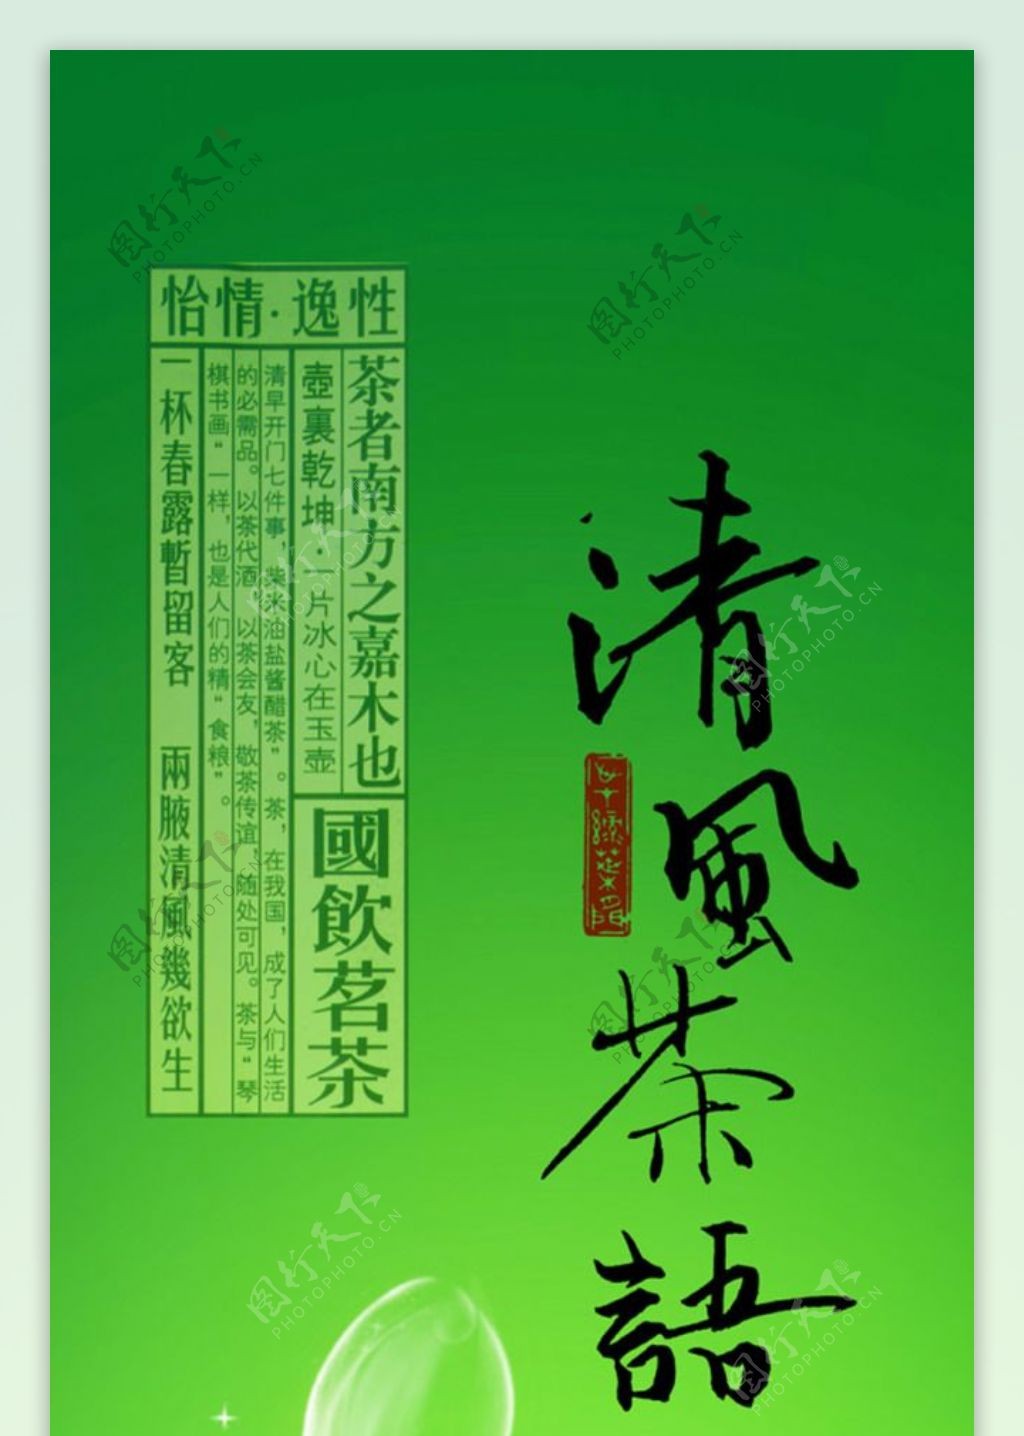 清风茶语绿茶广告